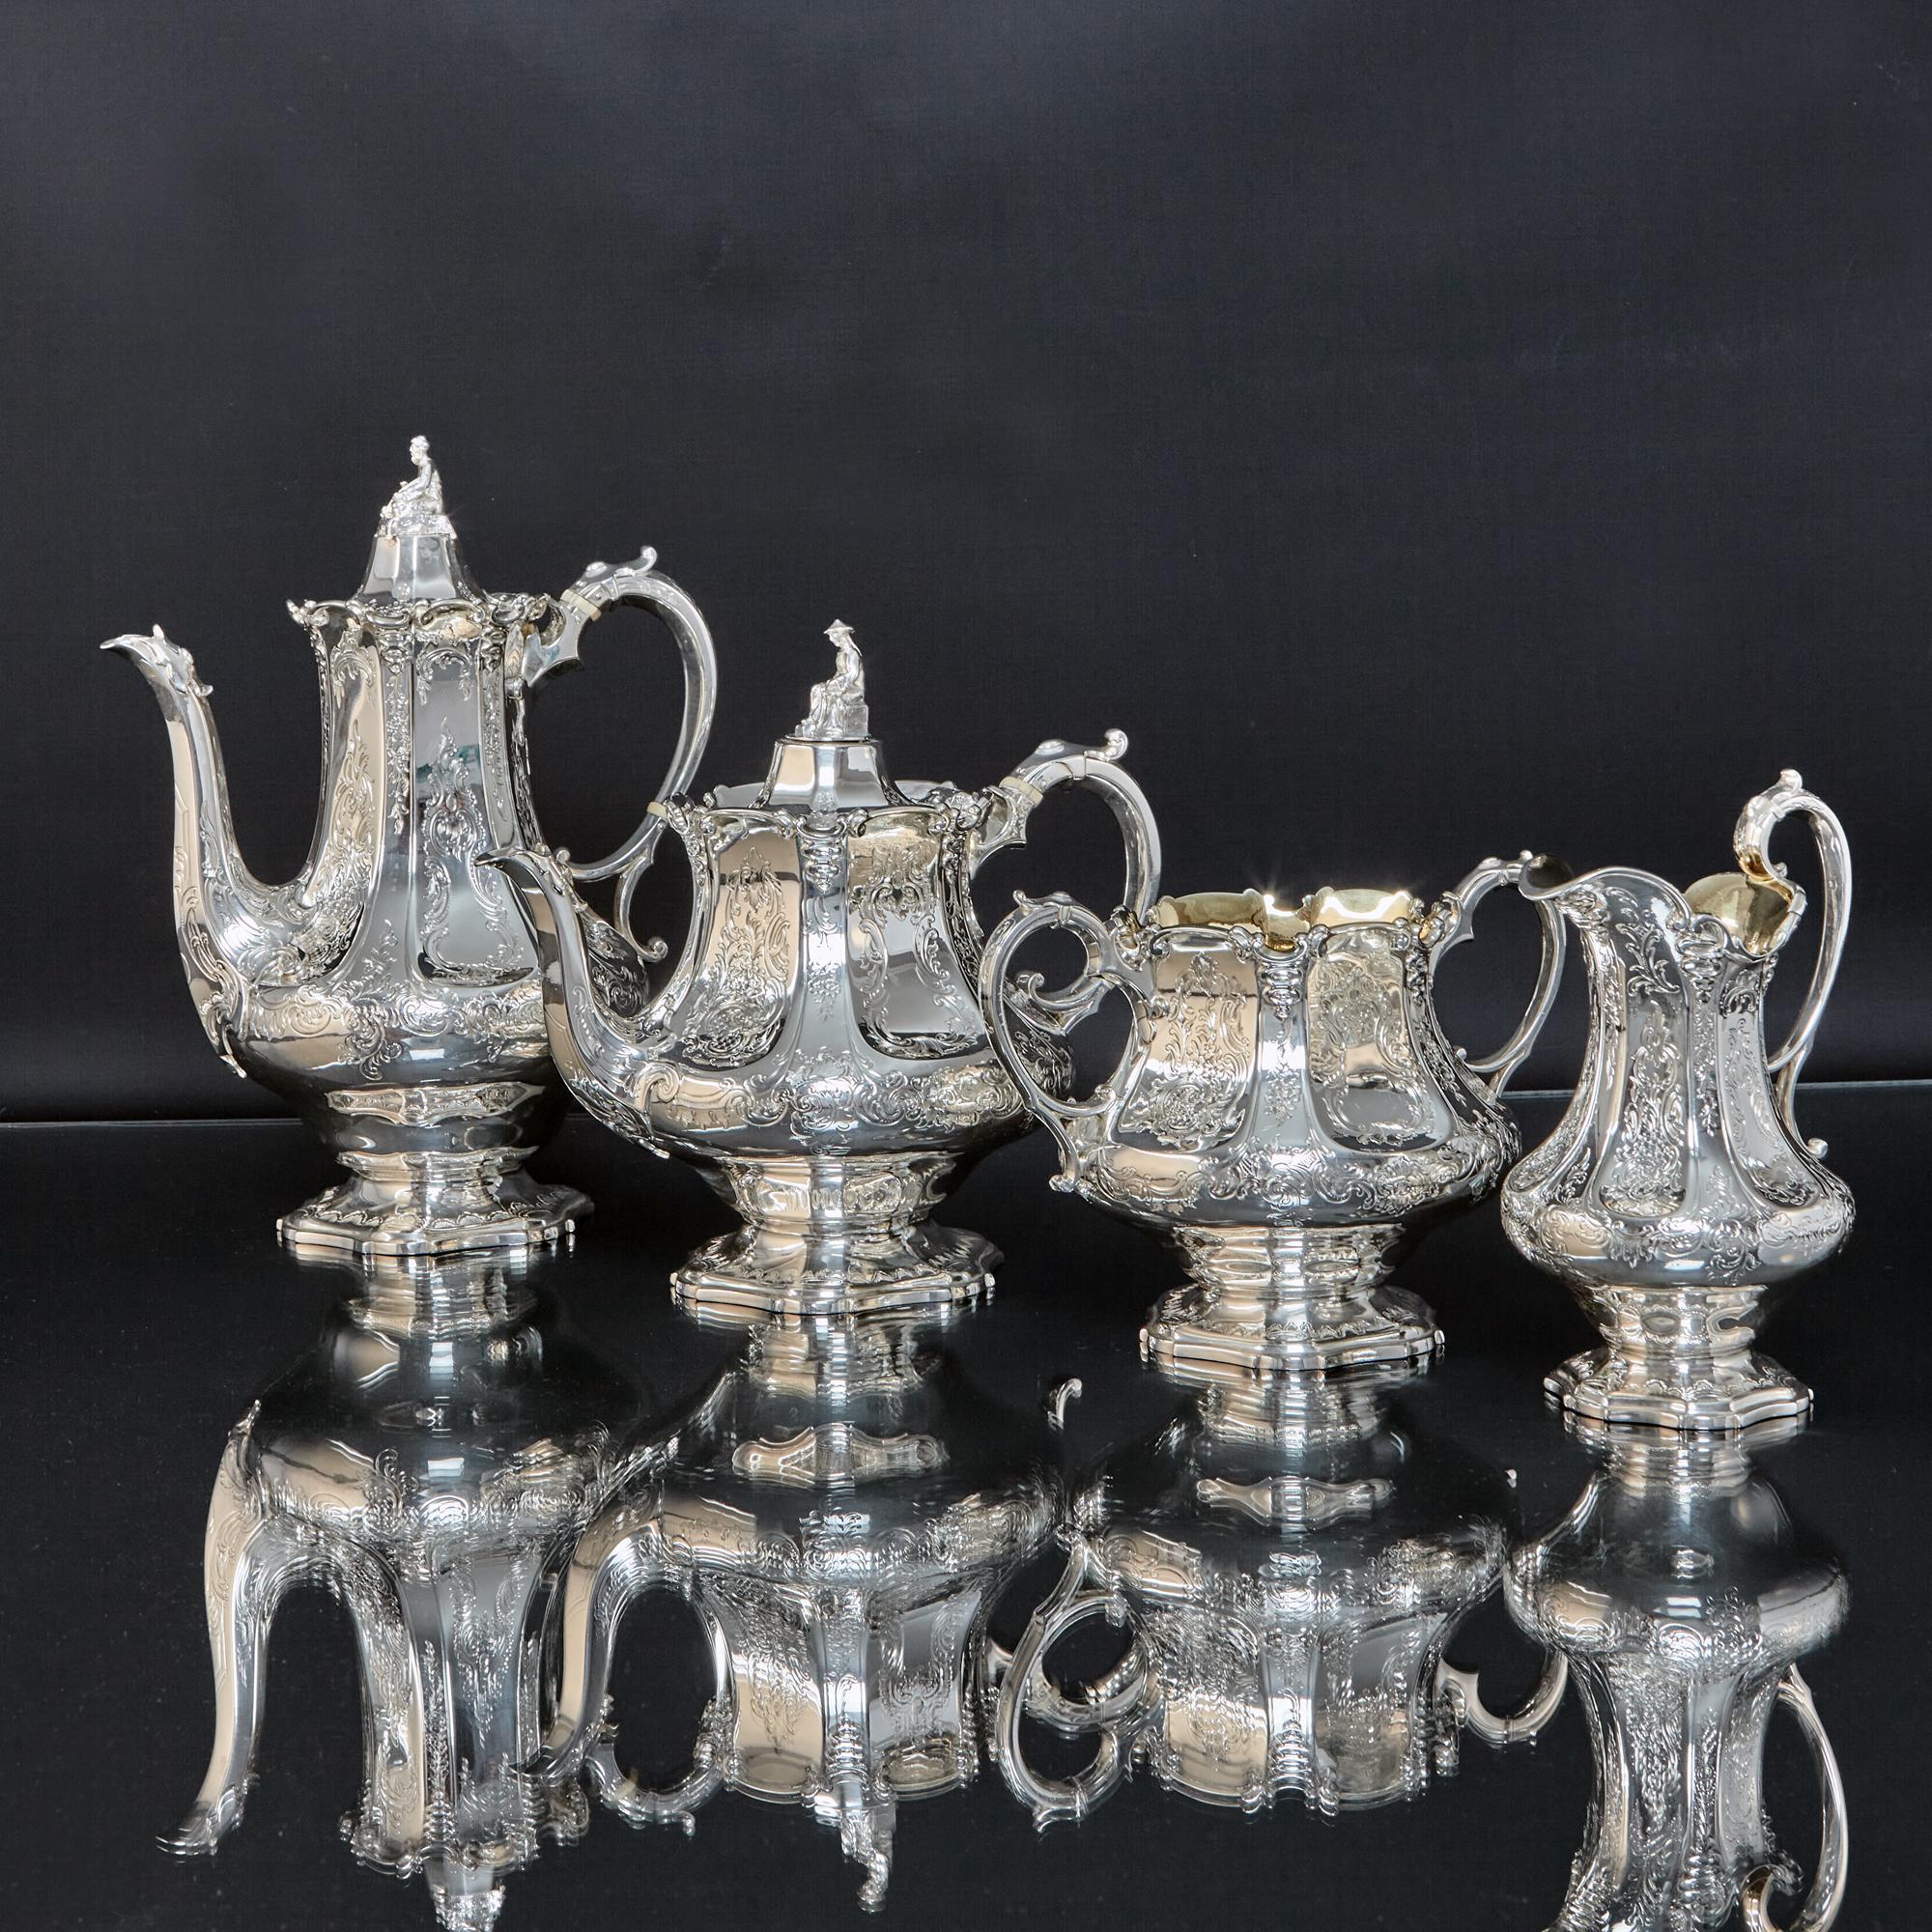 Eine feine Qualität antiken viktorianischen Silber vier Stück Tee und Kaffee-Set in außergewöhnlichen, ursprünglichen Zustand. Das Set besteht aus einer Kaffeekanne, einer Teekanne, einem Milchkännchen und einer Zuckerdose, wobei die beiden